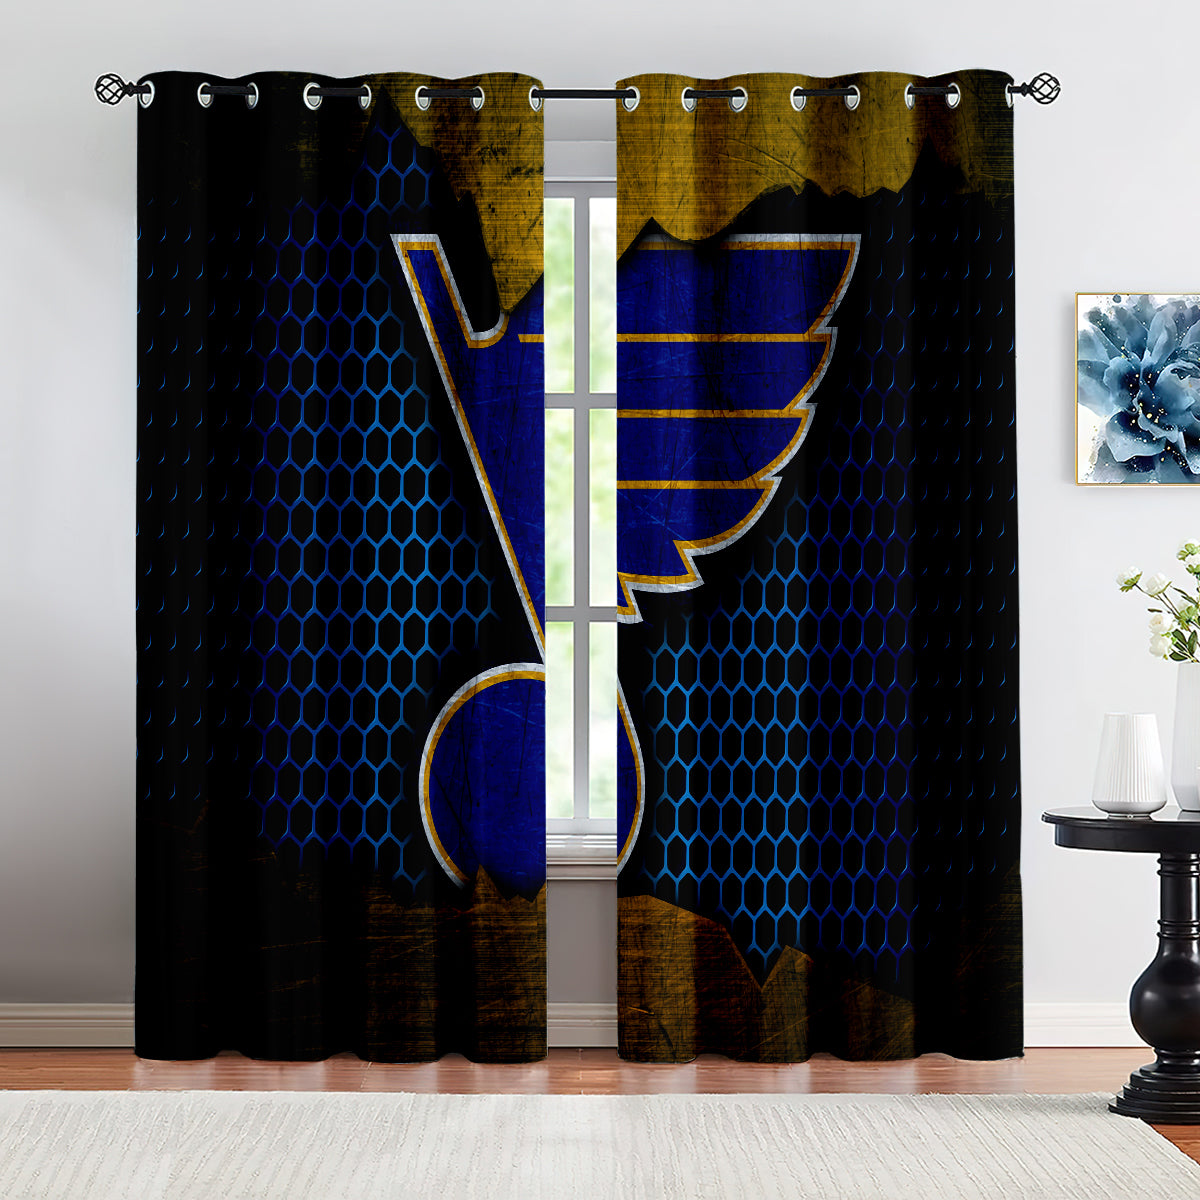 St Louis Blues Hockey League Blackout Curtains Drapes For Window Treatment Set